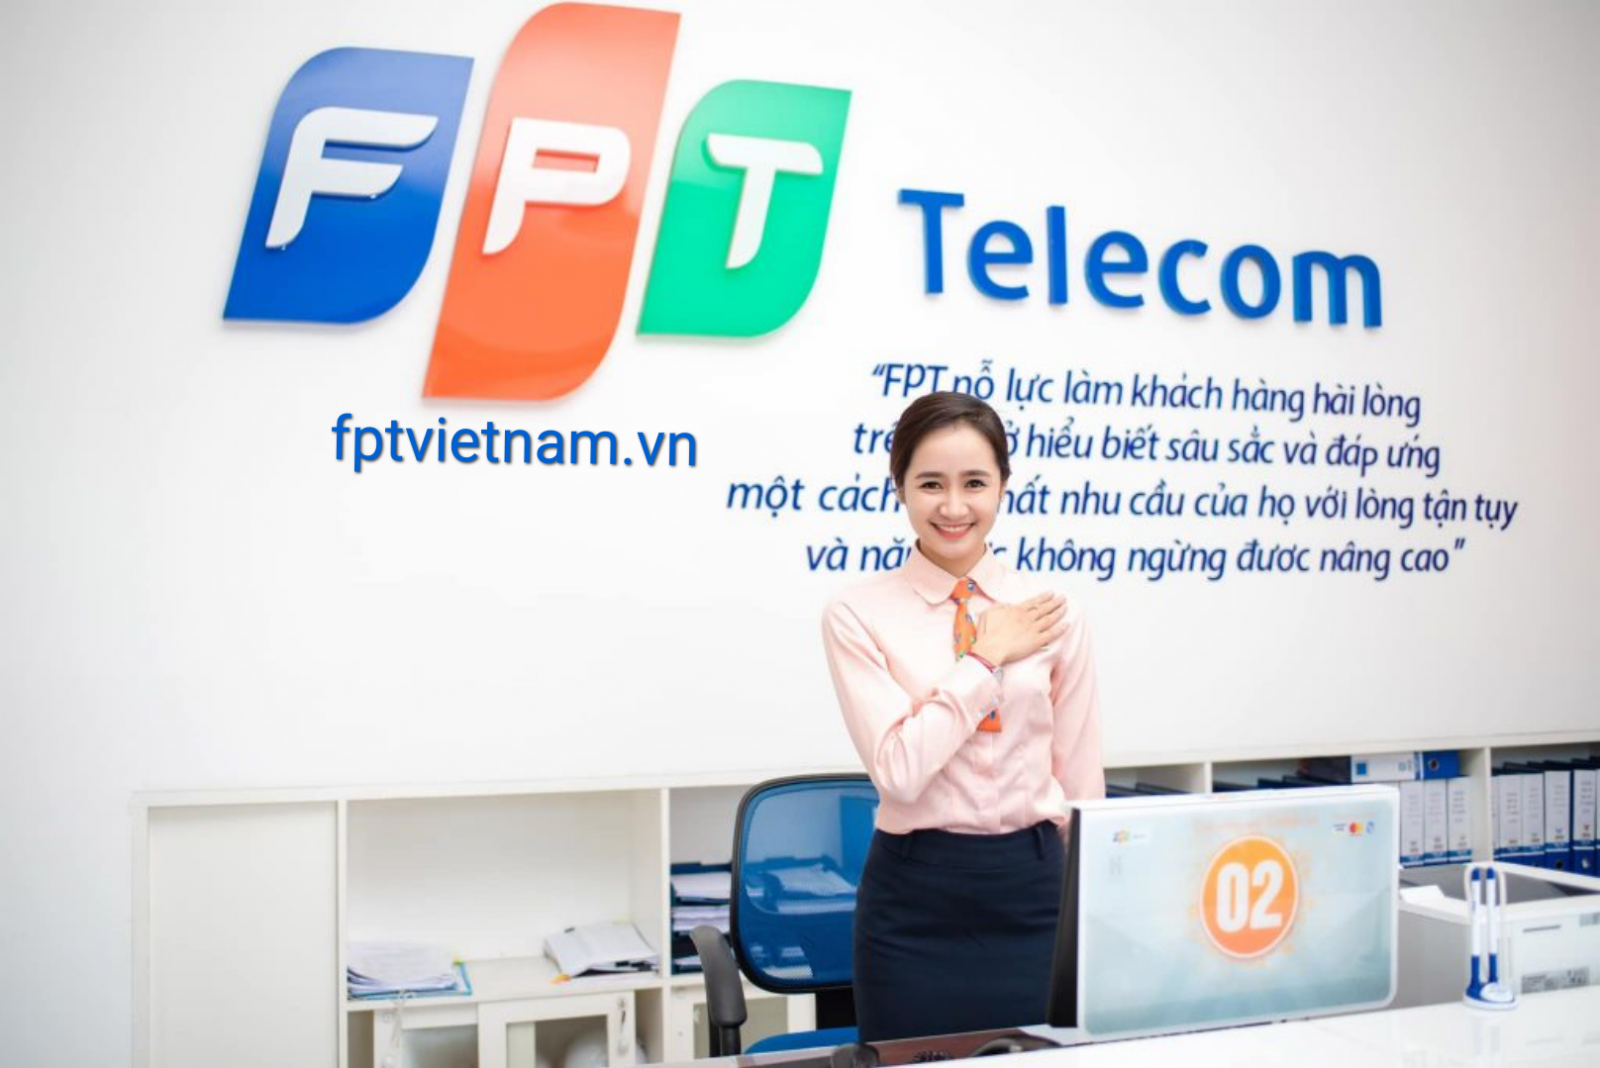 dịch vụ fpt telecom Thái Nguyên